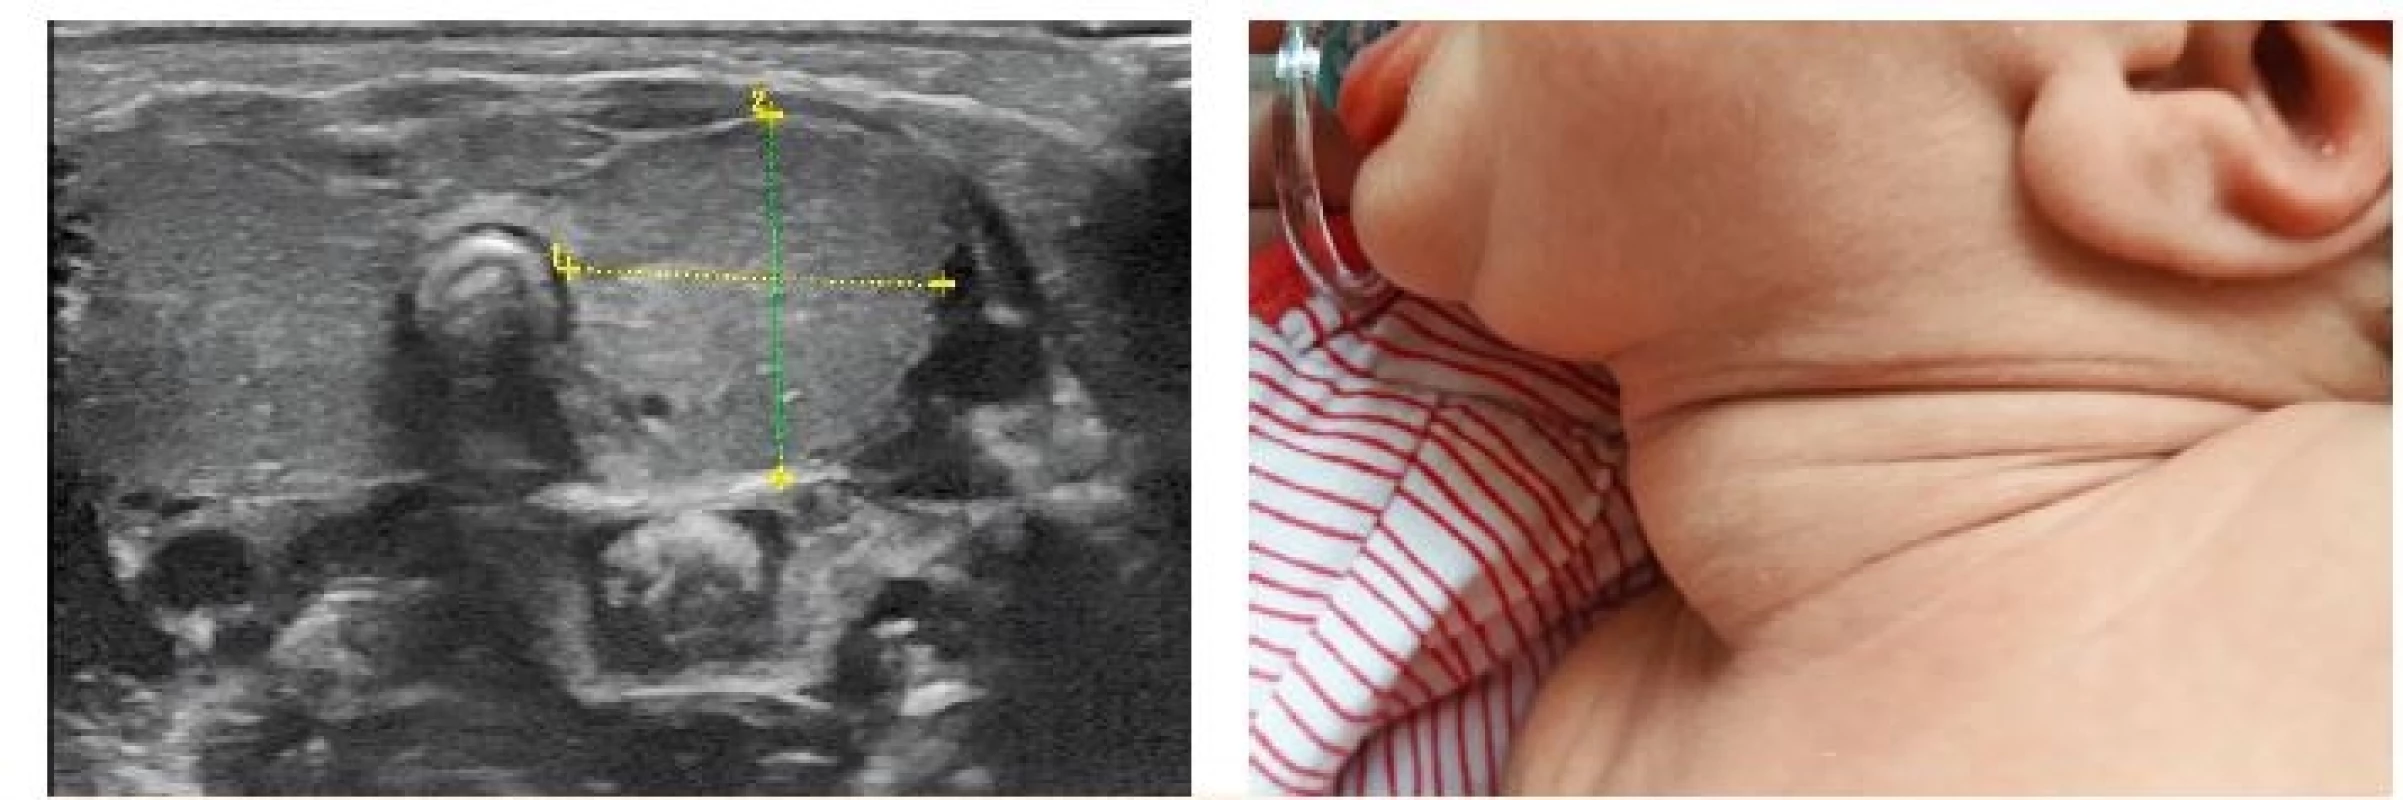 Vlevo ultrazvukový nález rozsáhlé novorozenecké strumy – objem 6 ml, norma pro novorozence kolem 0,6 ml (z archivu MUDr. Jaroslava Zikmunda, CSc.). Vpravo odpovídající fyzikální nález (z archivu autorky, se souhlasem rodičů).<br> Fig. 5. Left: ultrasound of a large neonatal goiter – volume 6 ml, normal neonatal thyroid volume about 0.6 ml (provided by MUDr. Jaroslav Zikmund, CSc.). Right: corresponding clinical presentation (with parental consent).